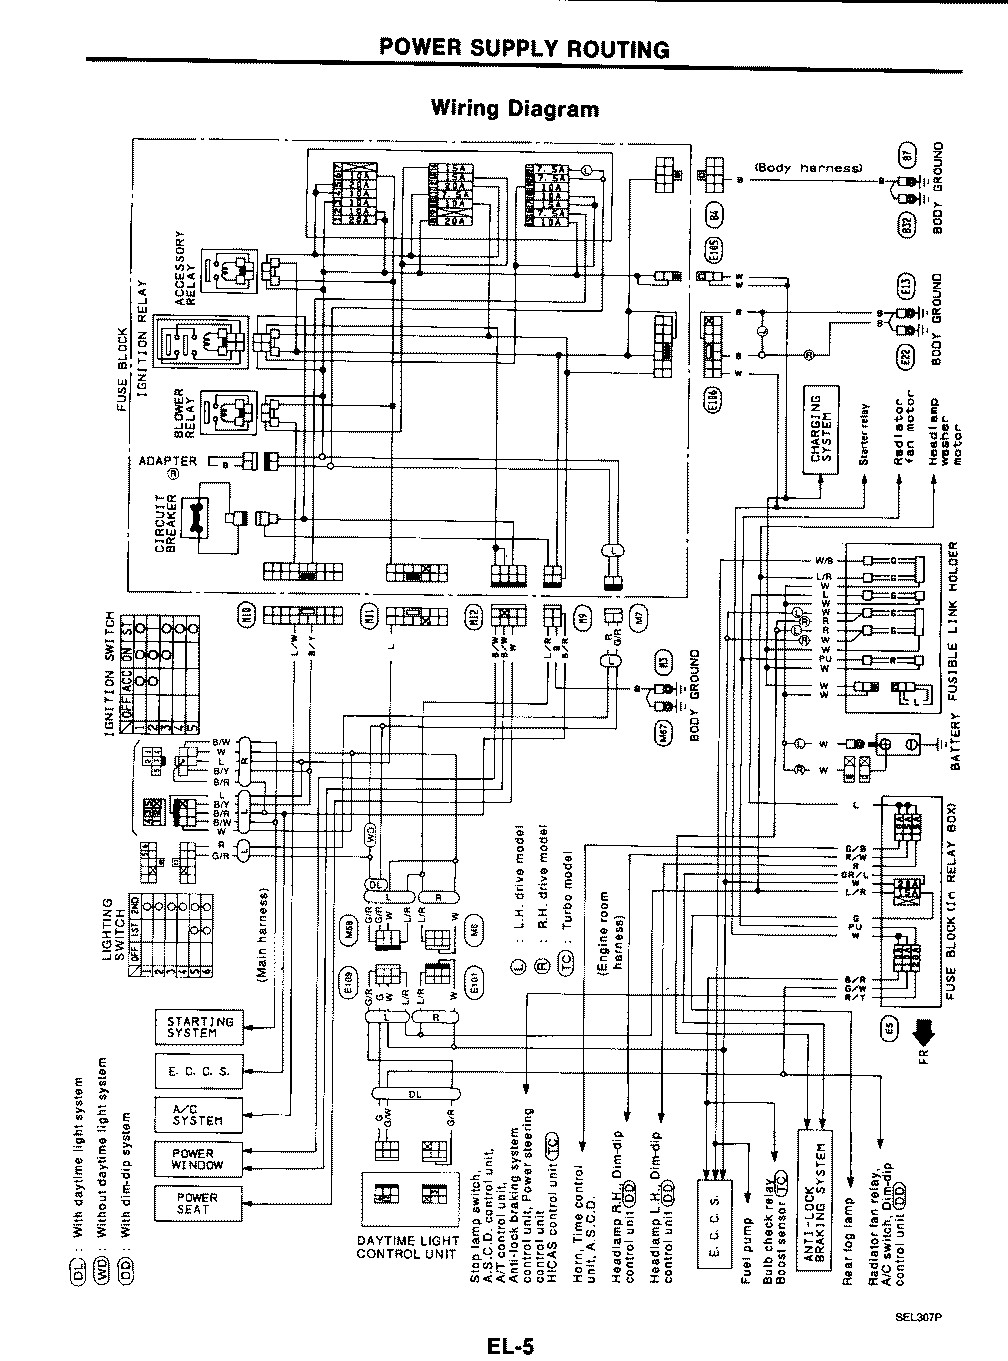 power supply wiring diagram nissan 300zx